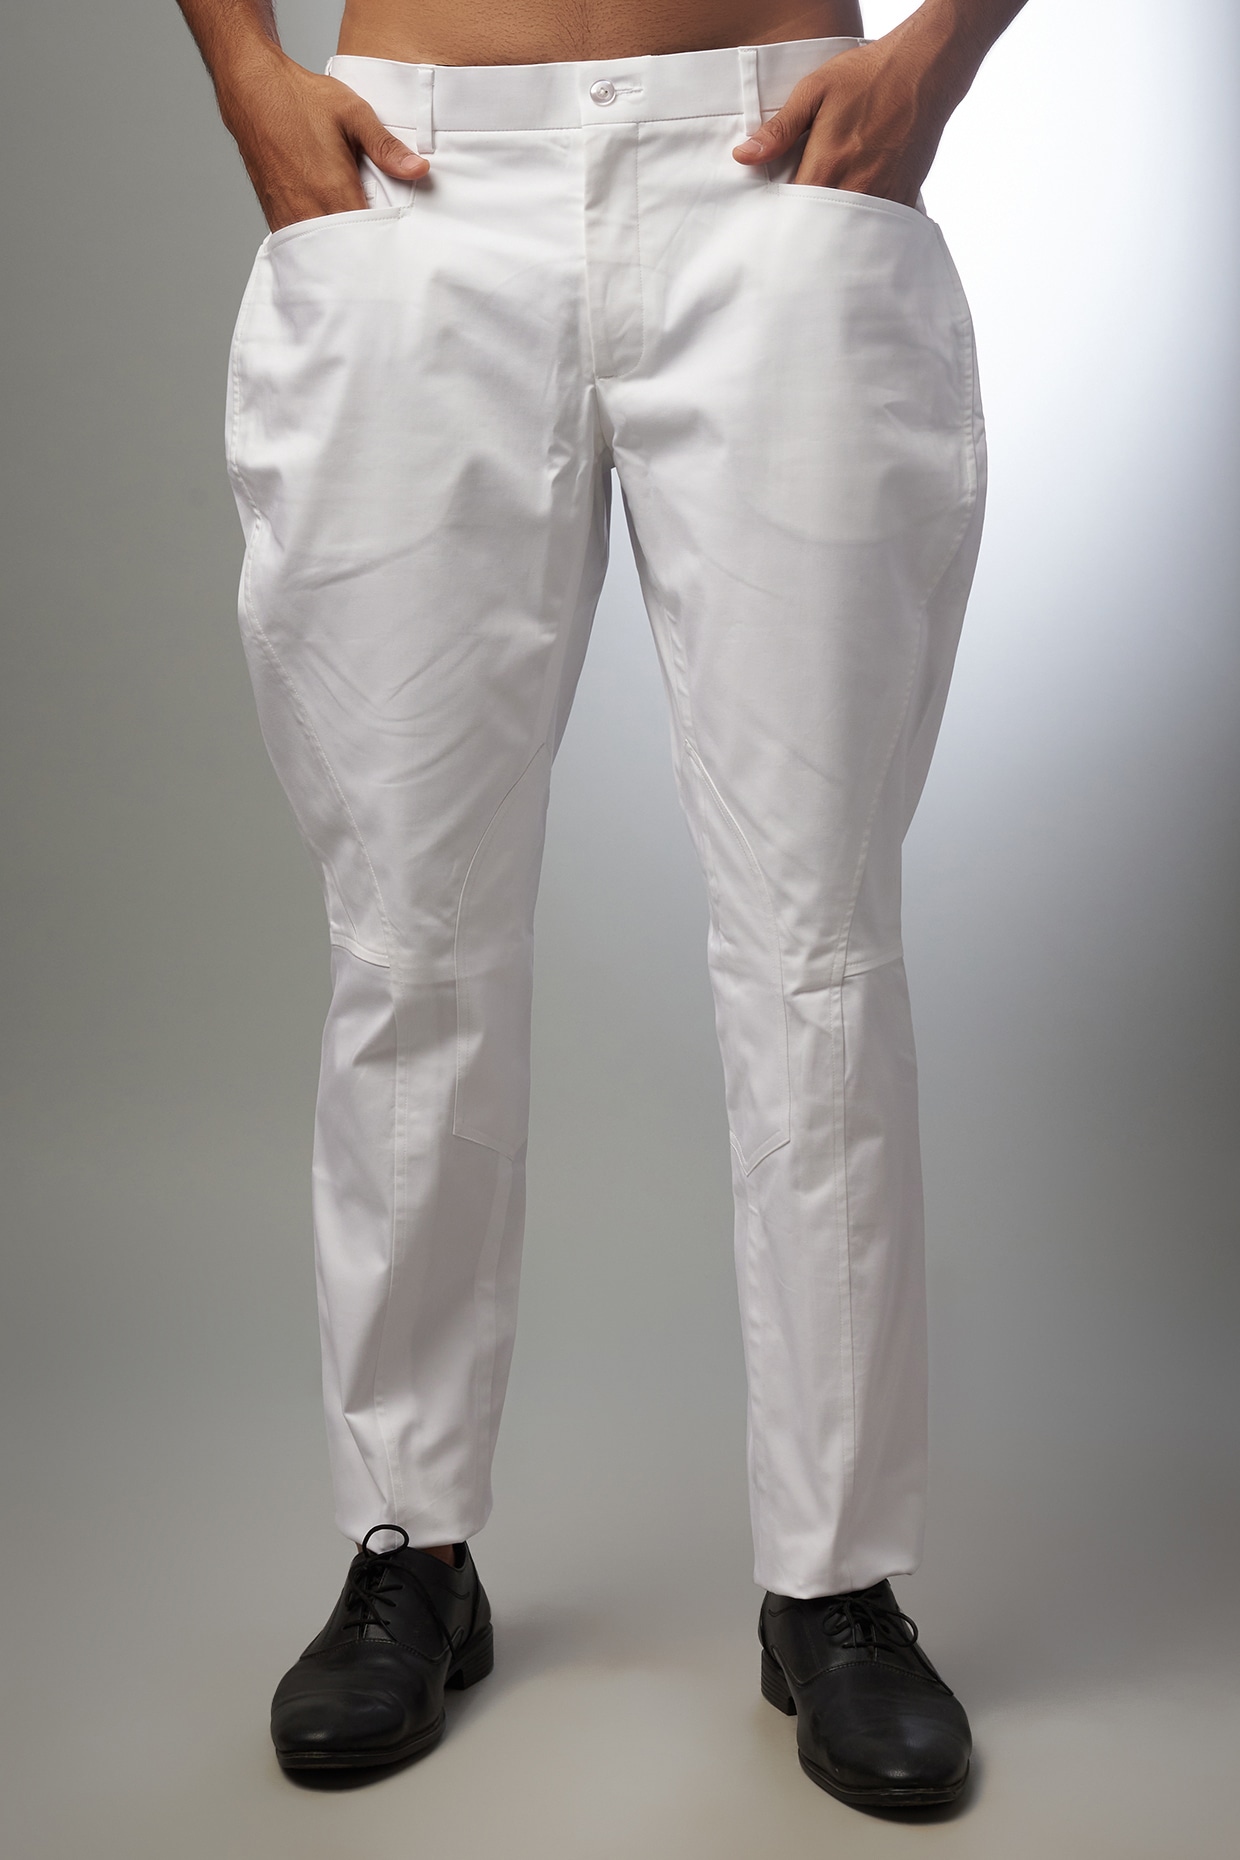 Buy Authentic Designer Trouser Suits Online In India  Tata CLiQ Luxury